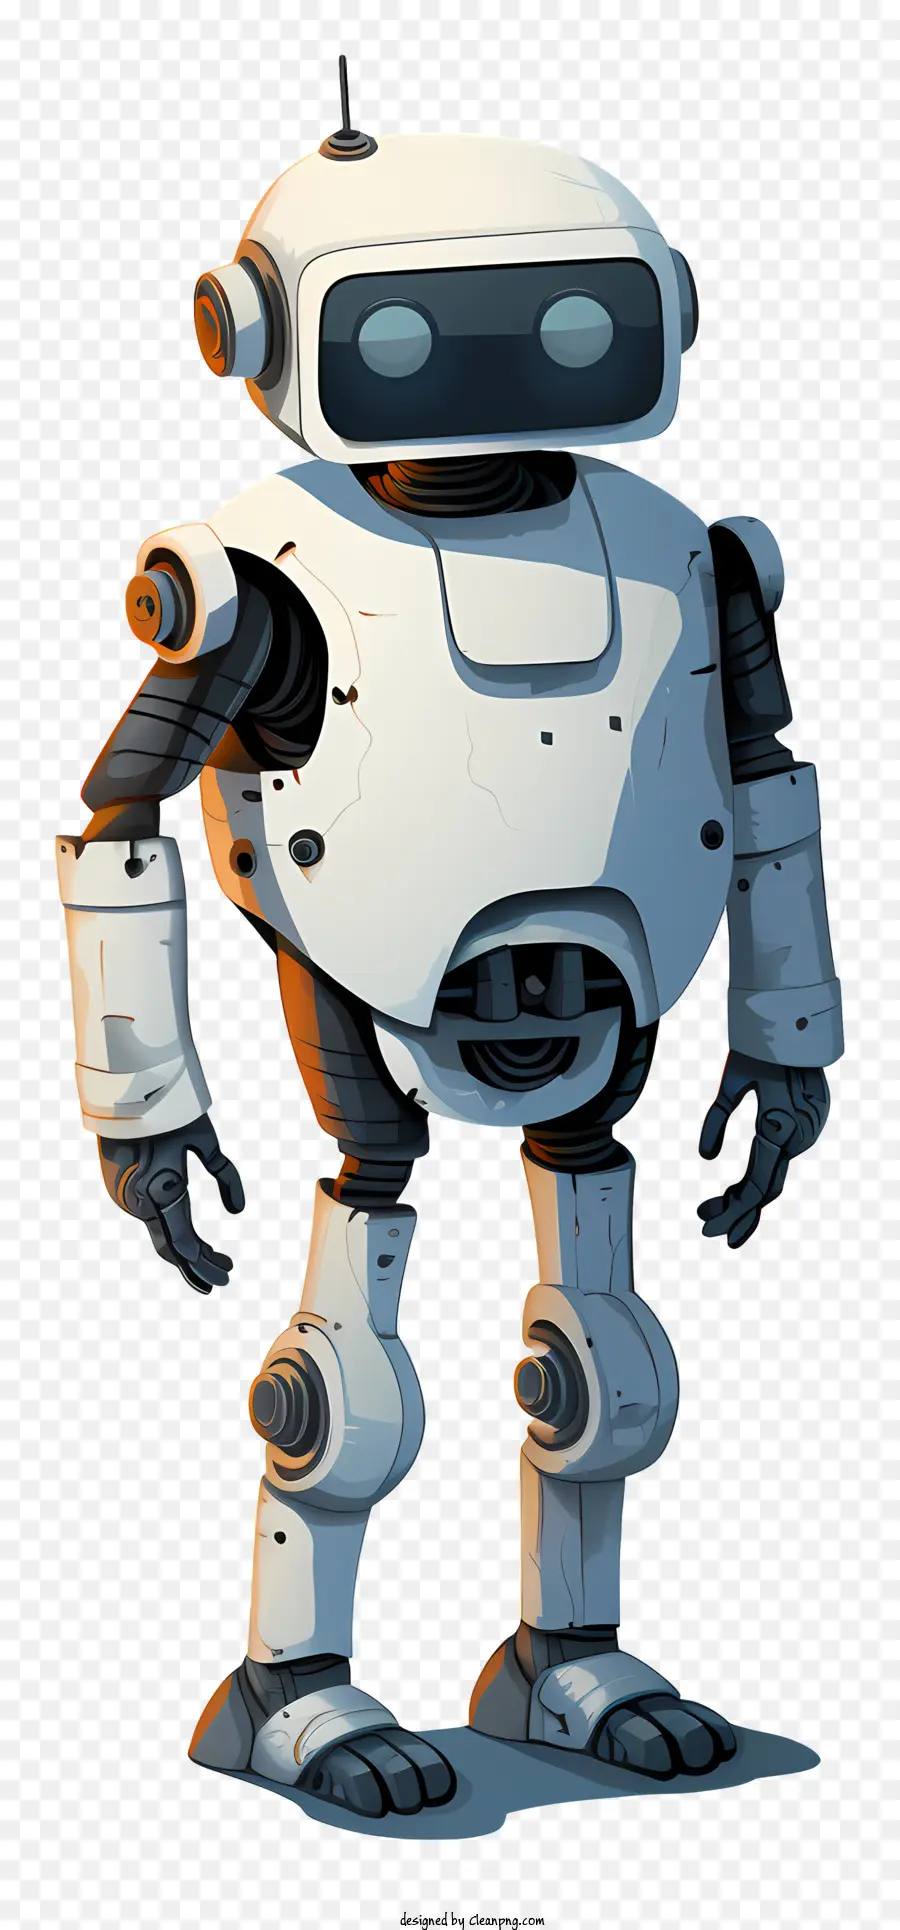 arancione - Robot umanoide arancione con occhi neri, vestiti bianchi e posa curiosa. 
Composizione colorata, luminosa e curiosa con illuminazione naturale